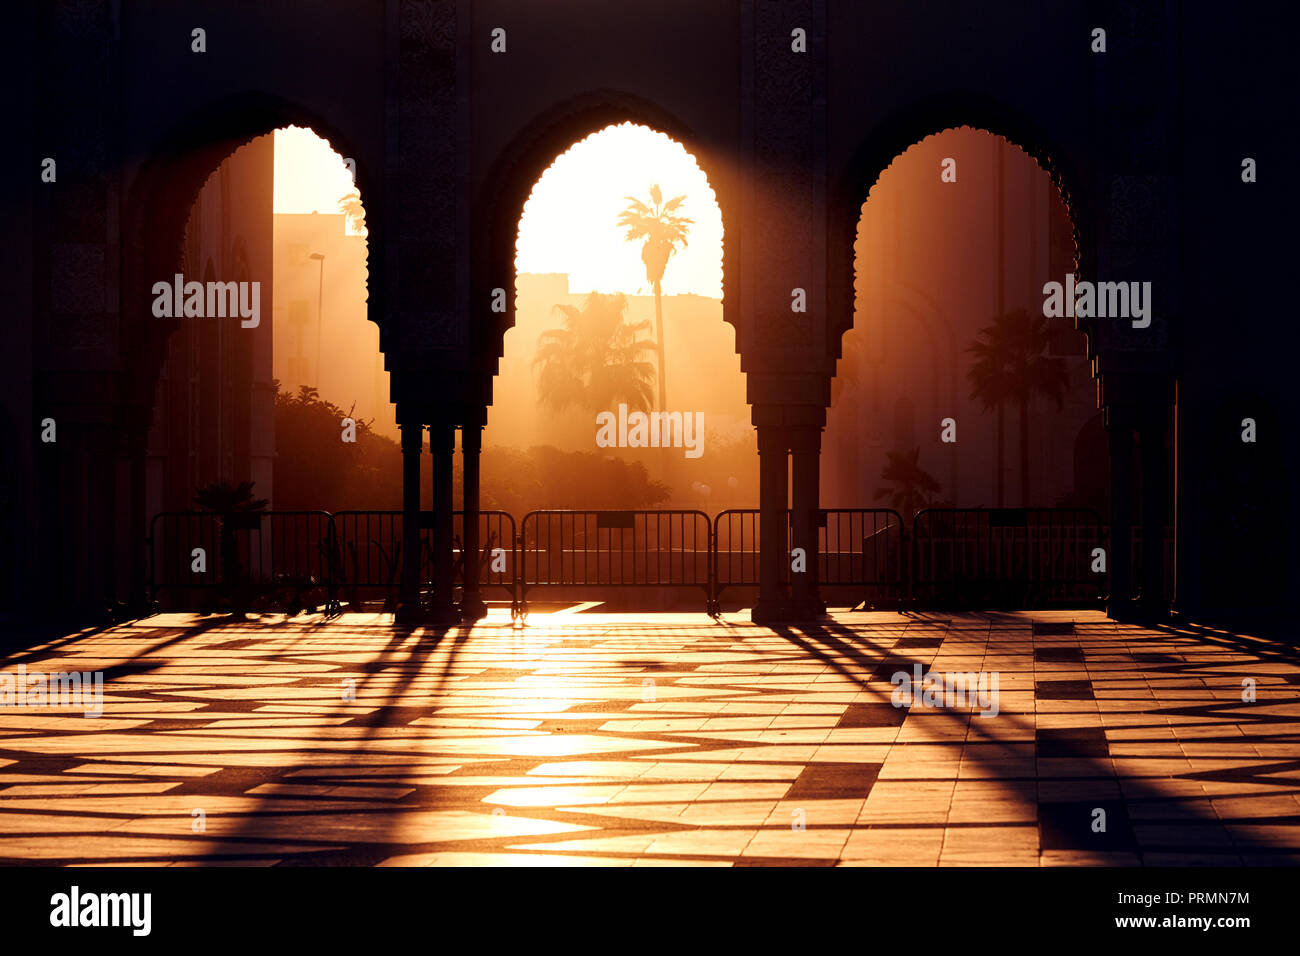 Grande mosquée de Hassan 2 au coucher du soleil à Casablanca au Maroc. Belles voûtes de la mosquée arabe dans le coucher de soleil, soleil Banque D'Images